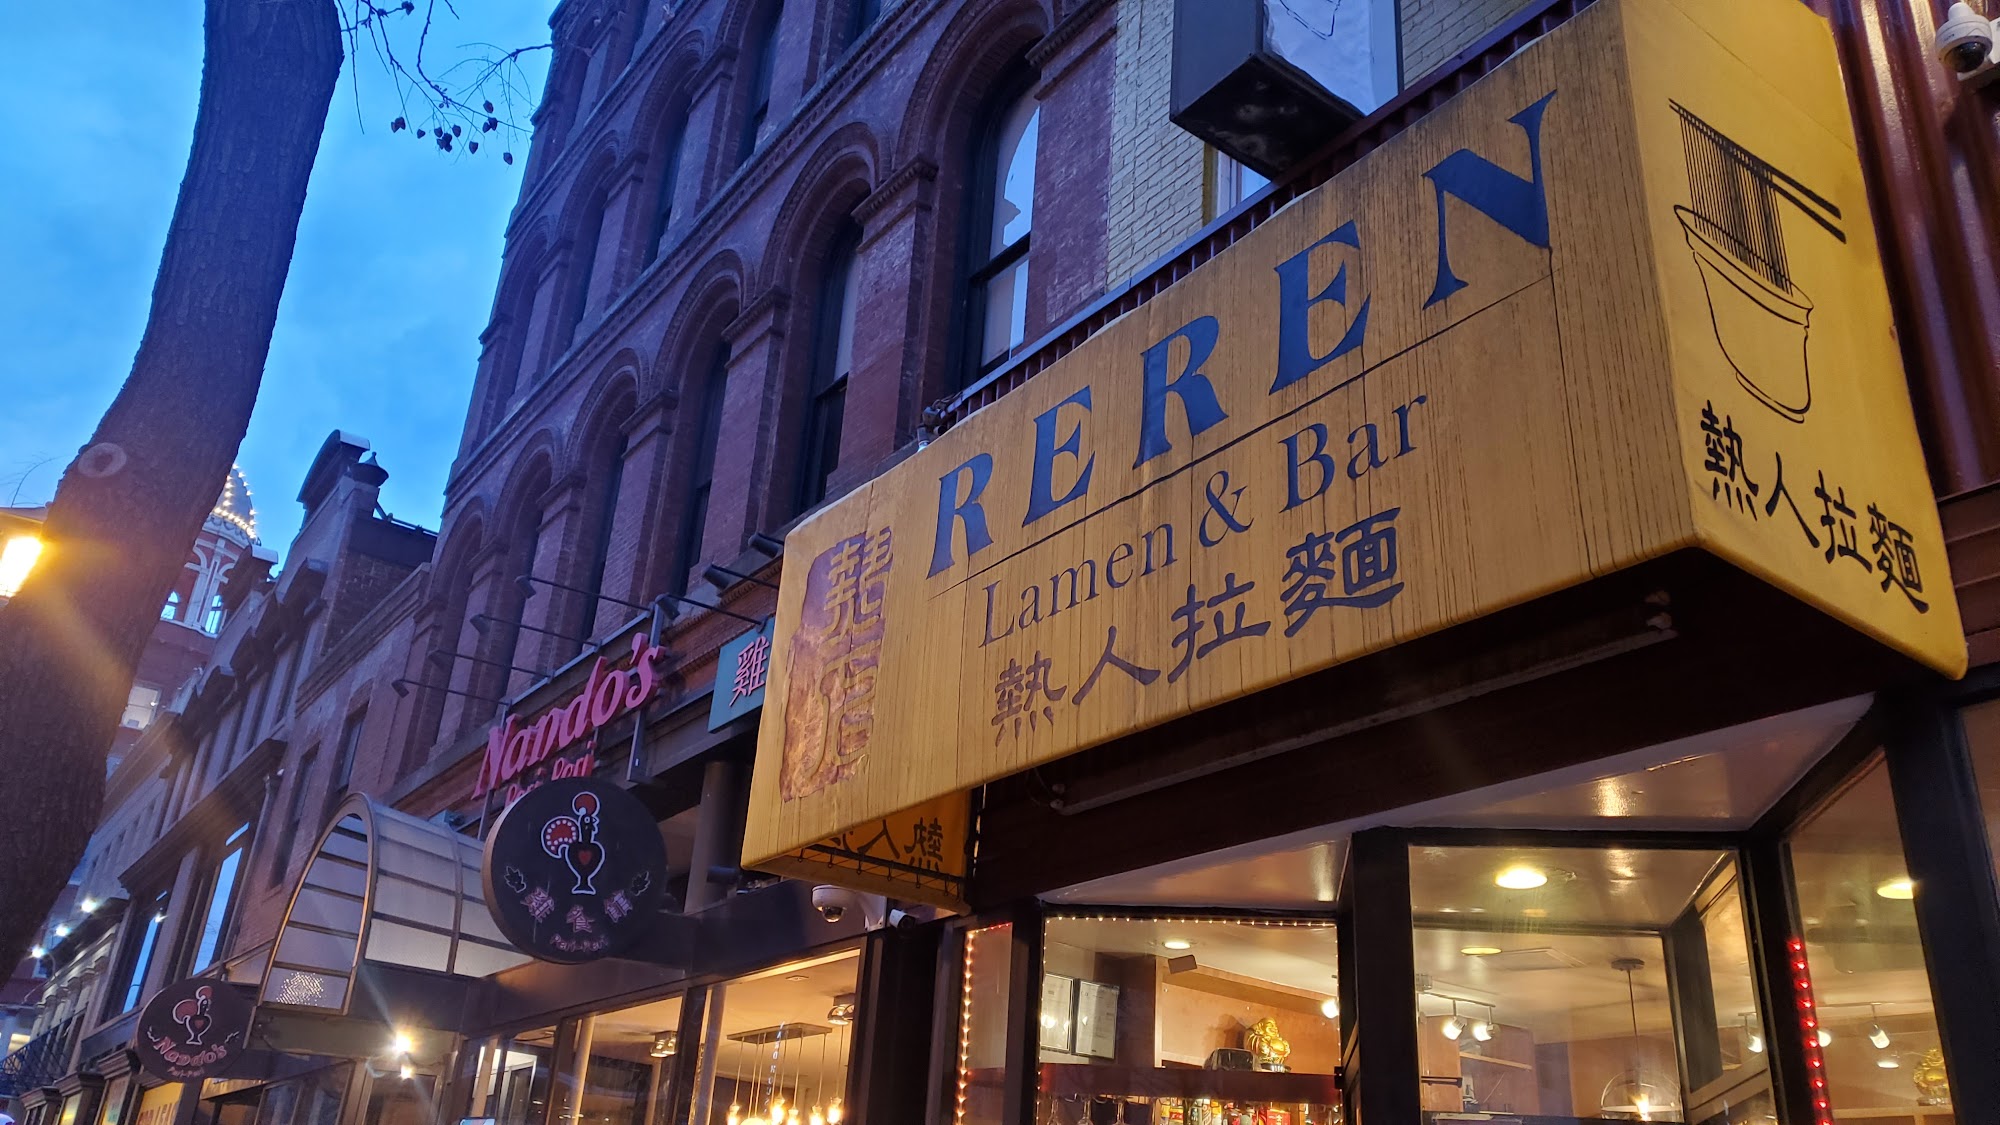 Reren Lamen & Bar